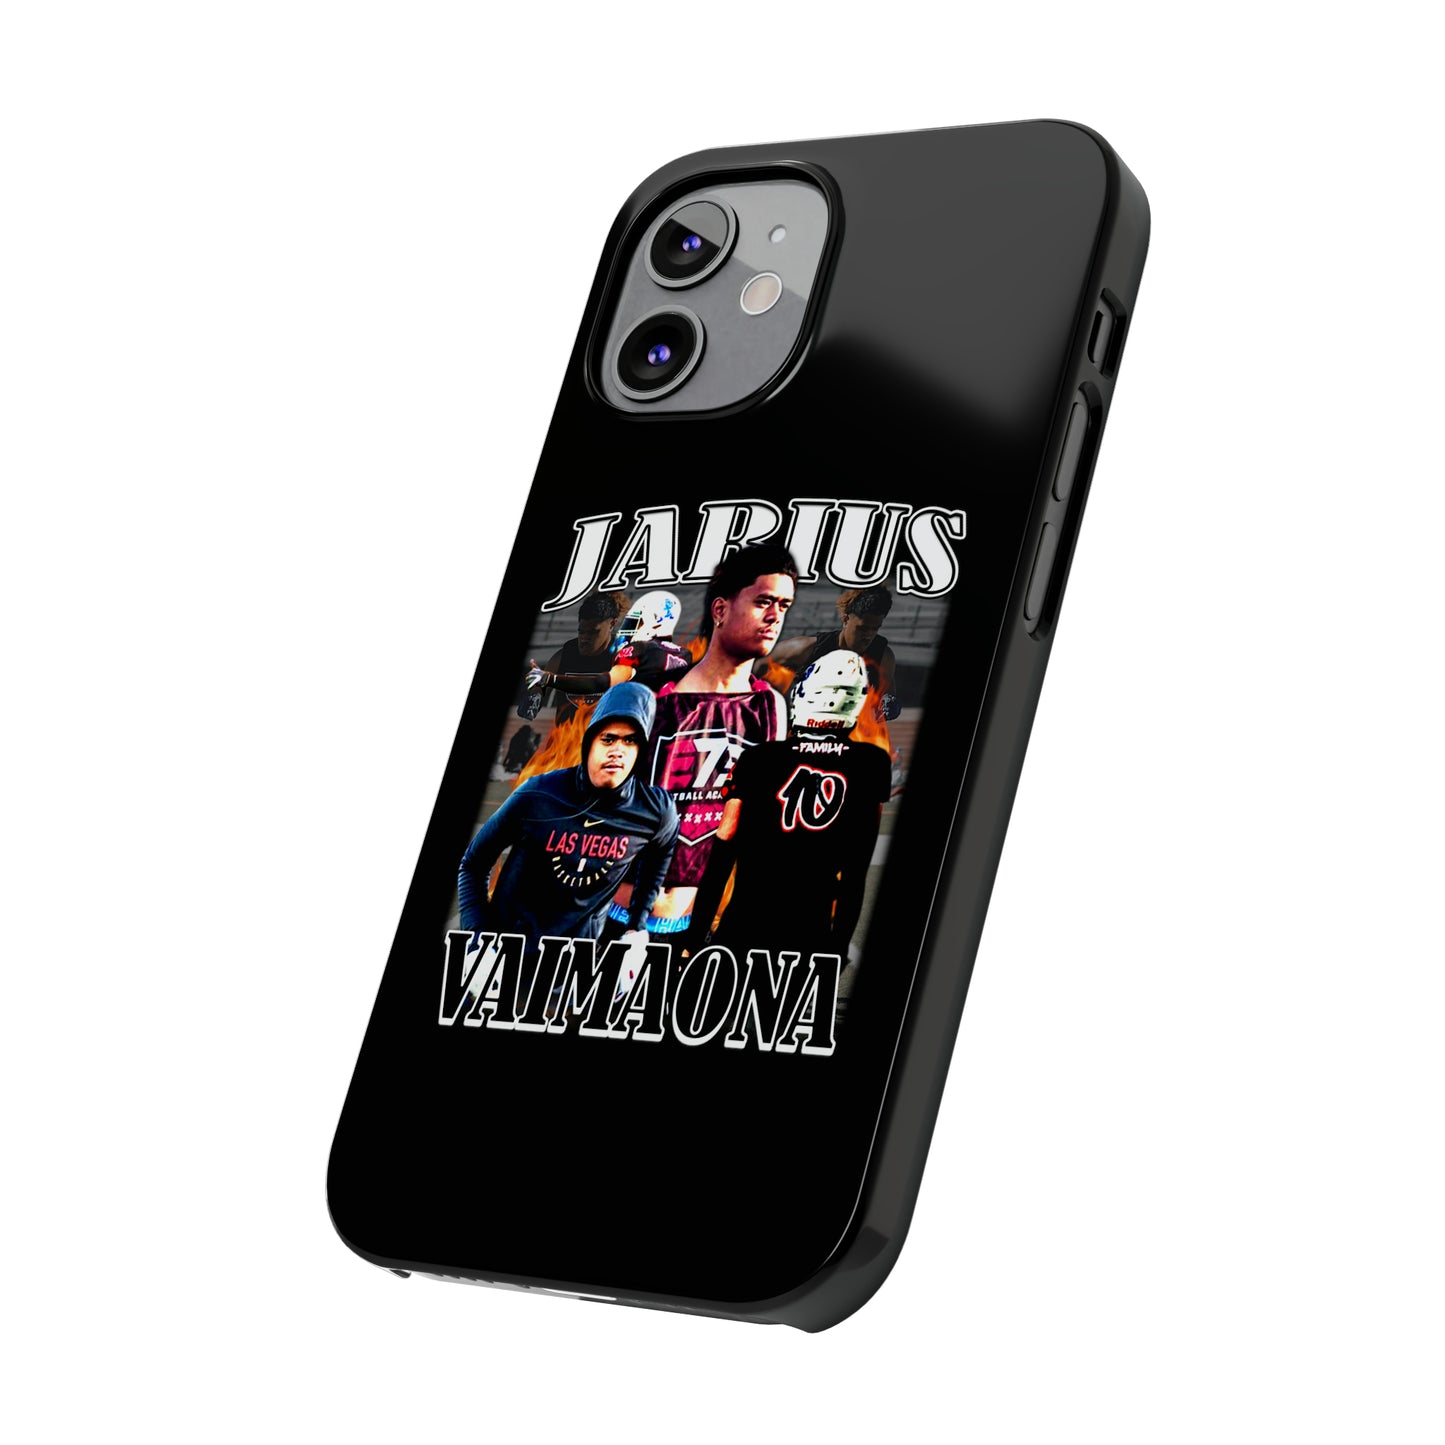 Jarius Vaimaona Slim Phone Cases